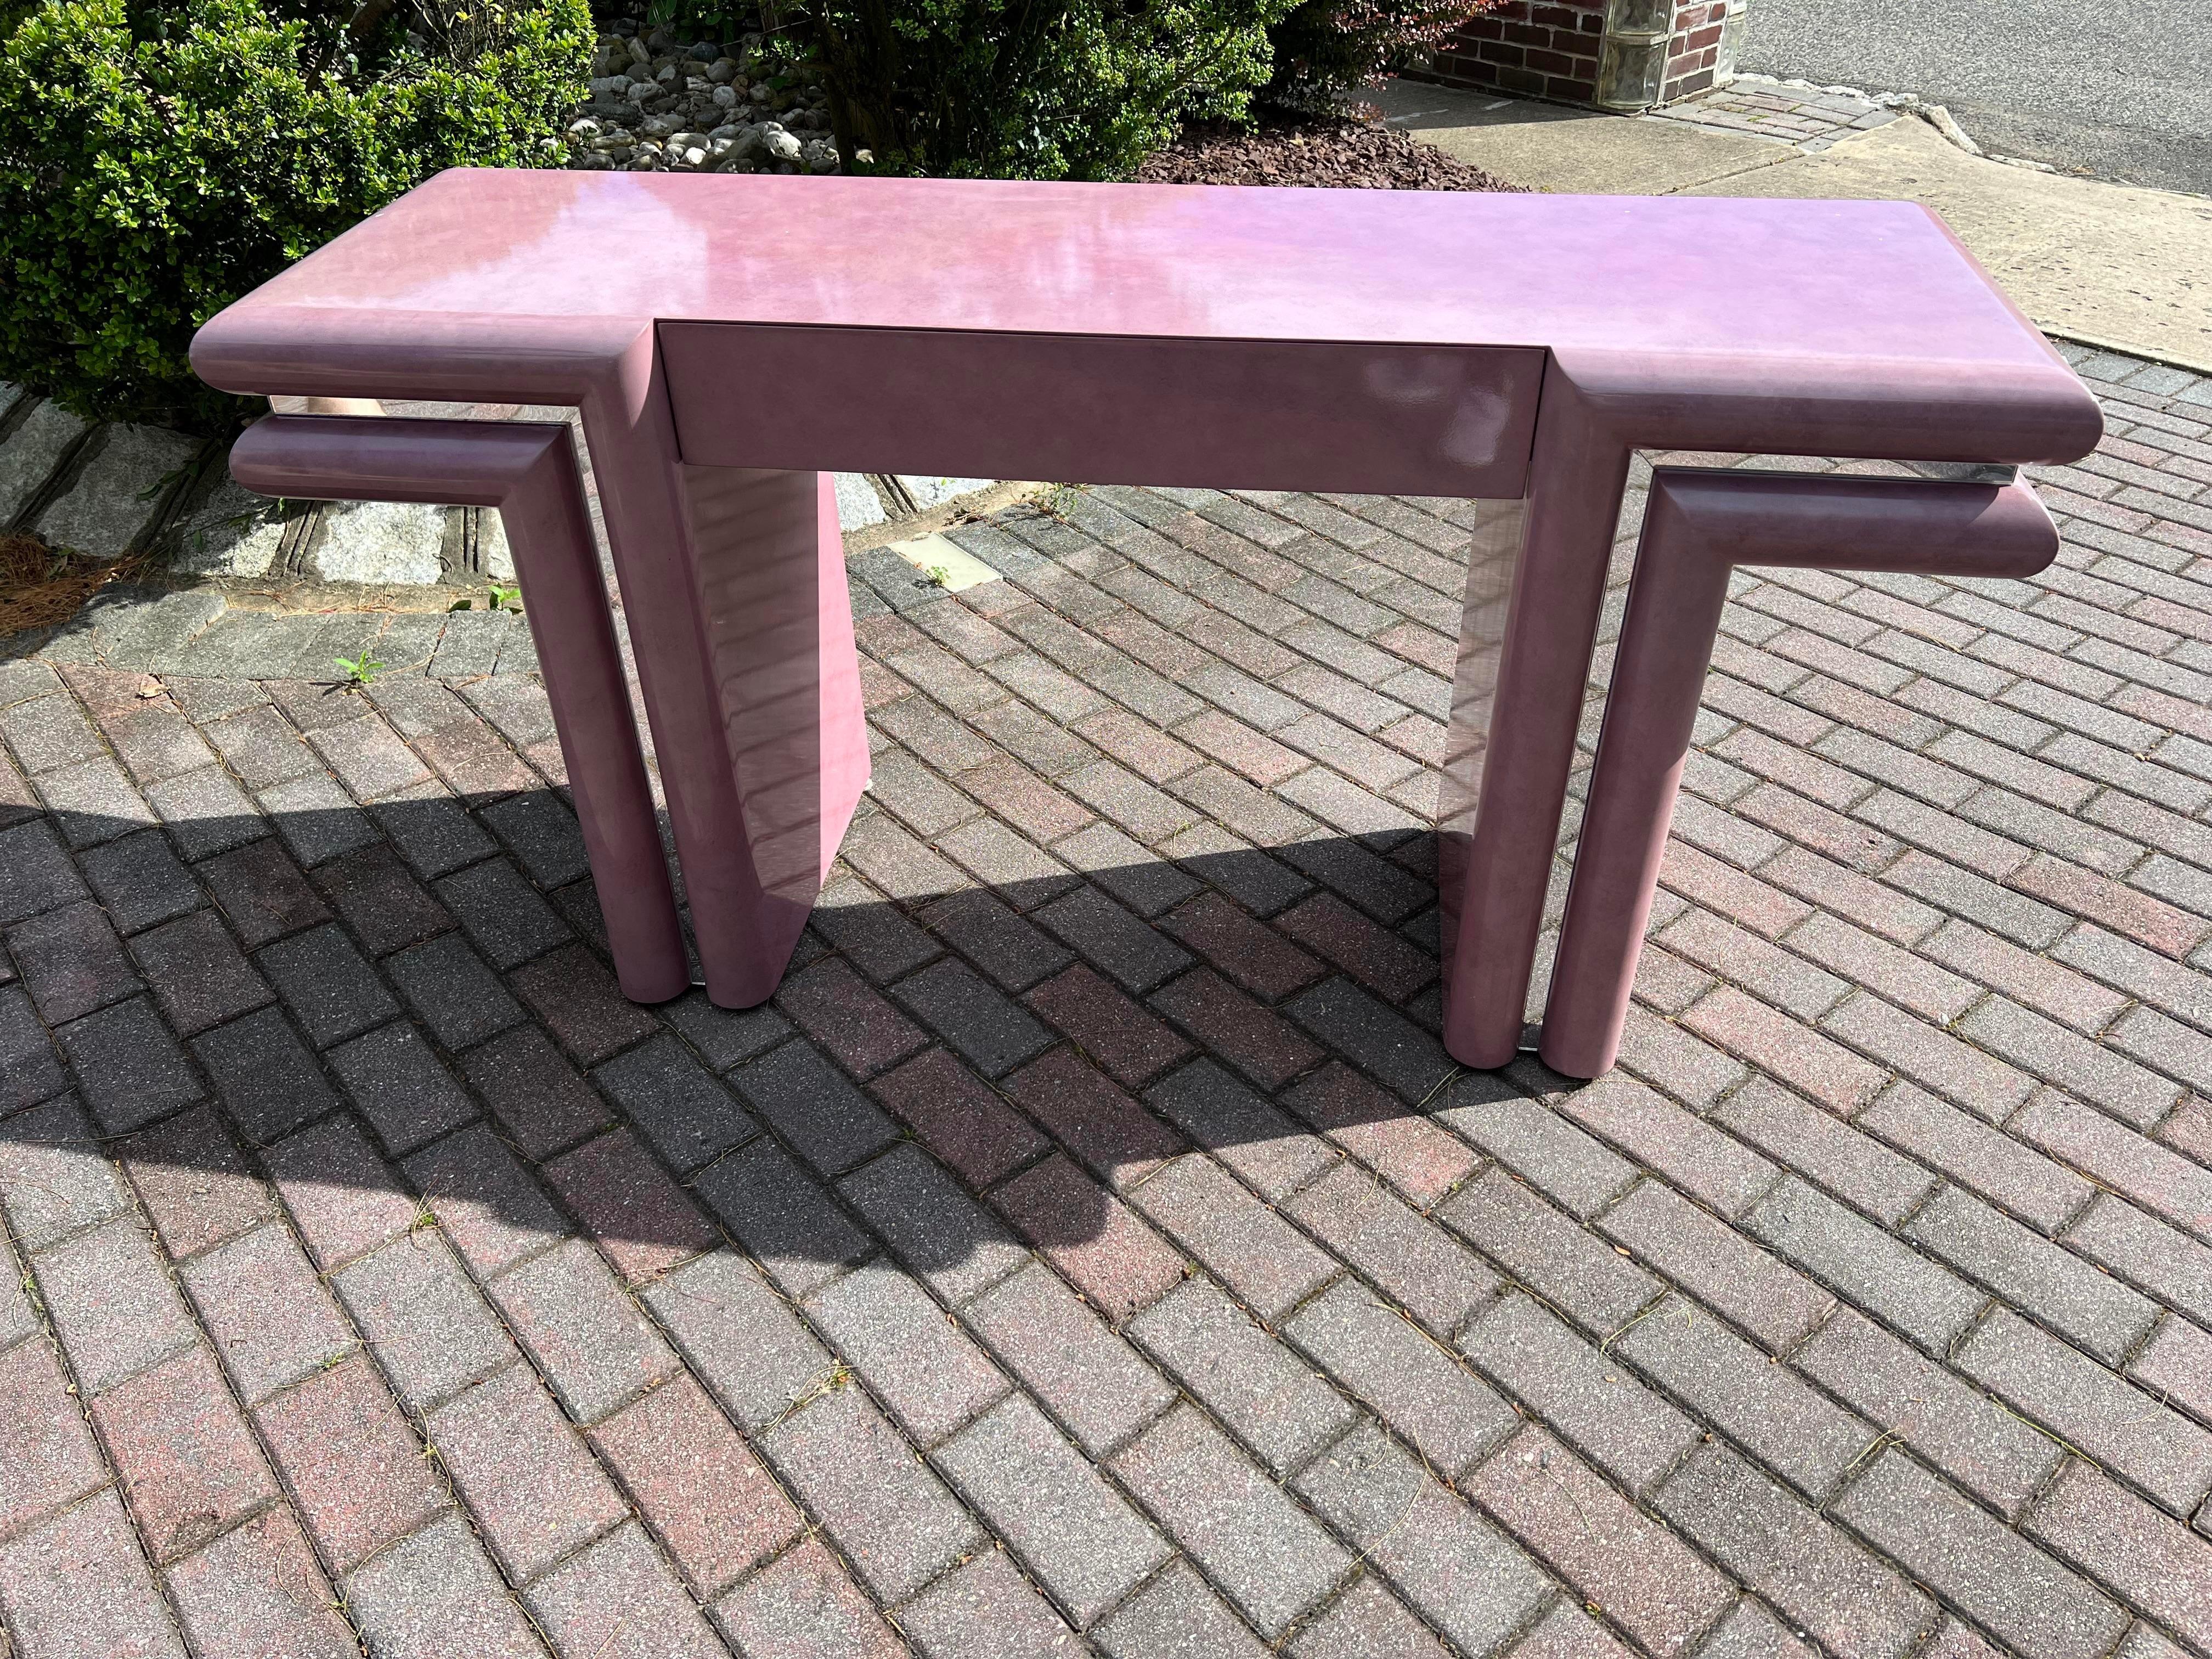 Maßgefertigter lila-rosa Schreibtisch im Stil von Karl Springer. Nicht nur die Farbe dieses Schreibtisches ist einzigartig, sondern auch die verspiegelten Zierleisten am gesamten Schreibtisch. Wahrlich ein einzigartiges Möbelstück aus den 80er